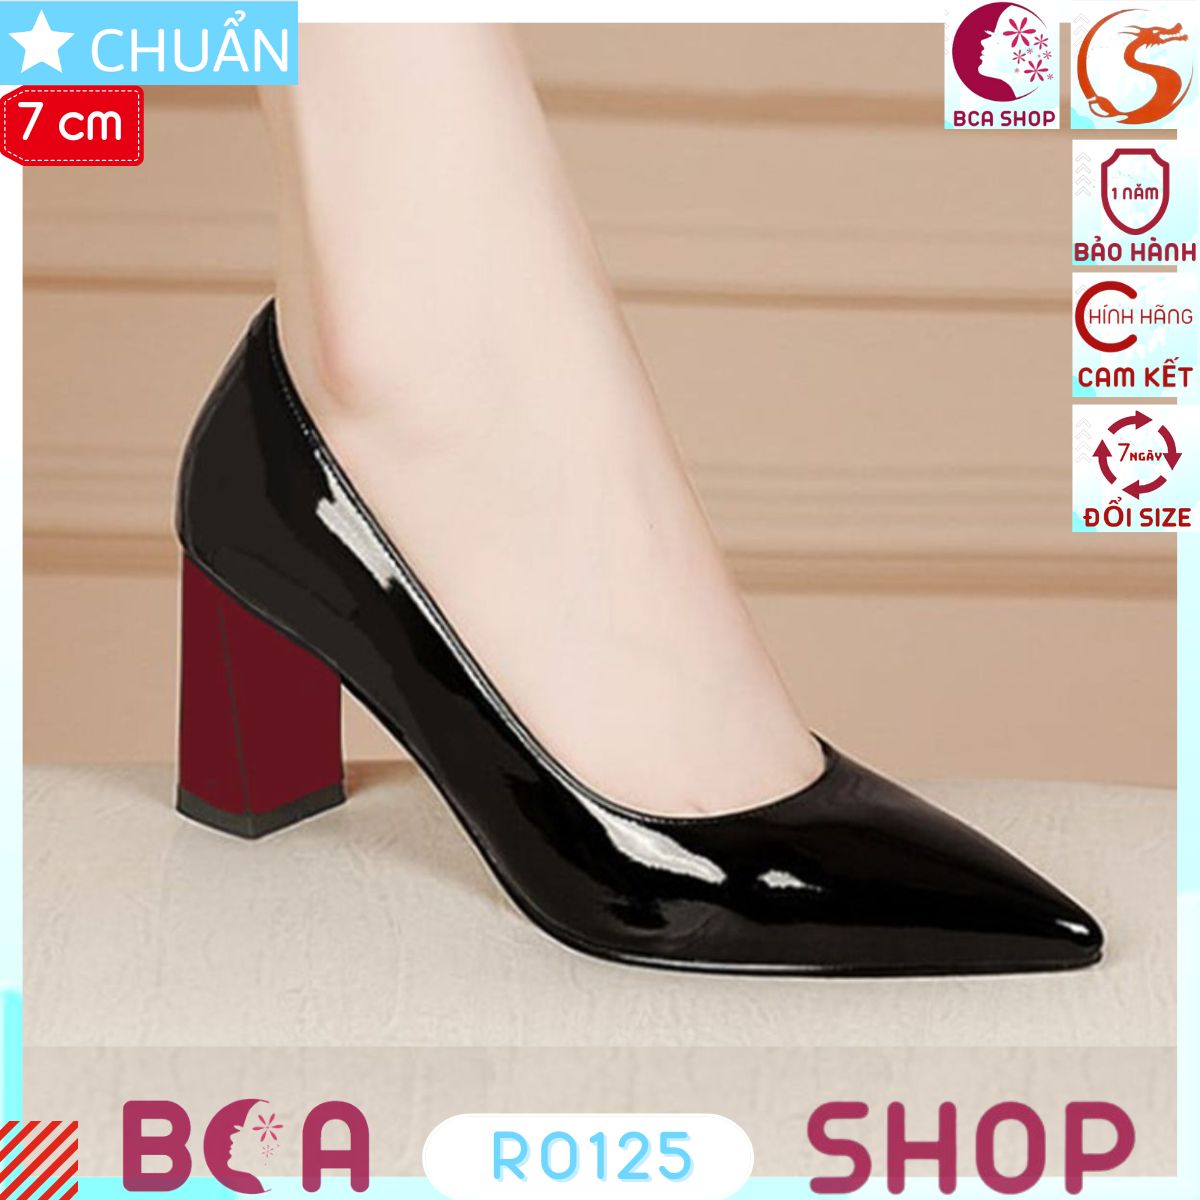 Giày cao gót nữ đế vuông 7p RO125 ROSATA tại BCASHOP phá cách với sự đối lập màu giữa thân giày đen và gót giày đỏ